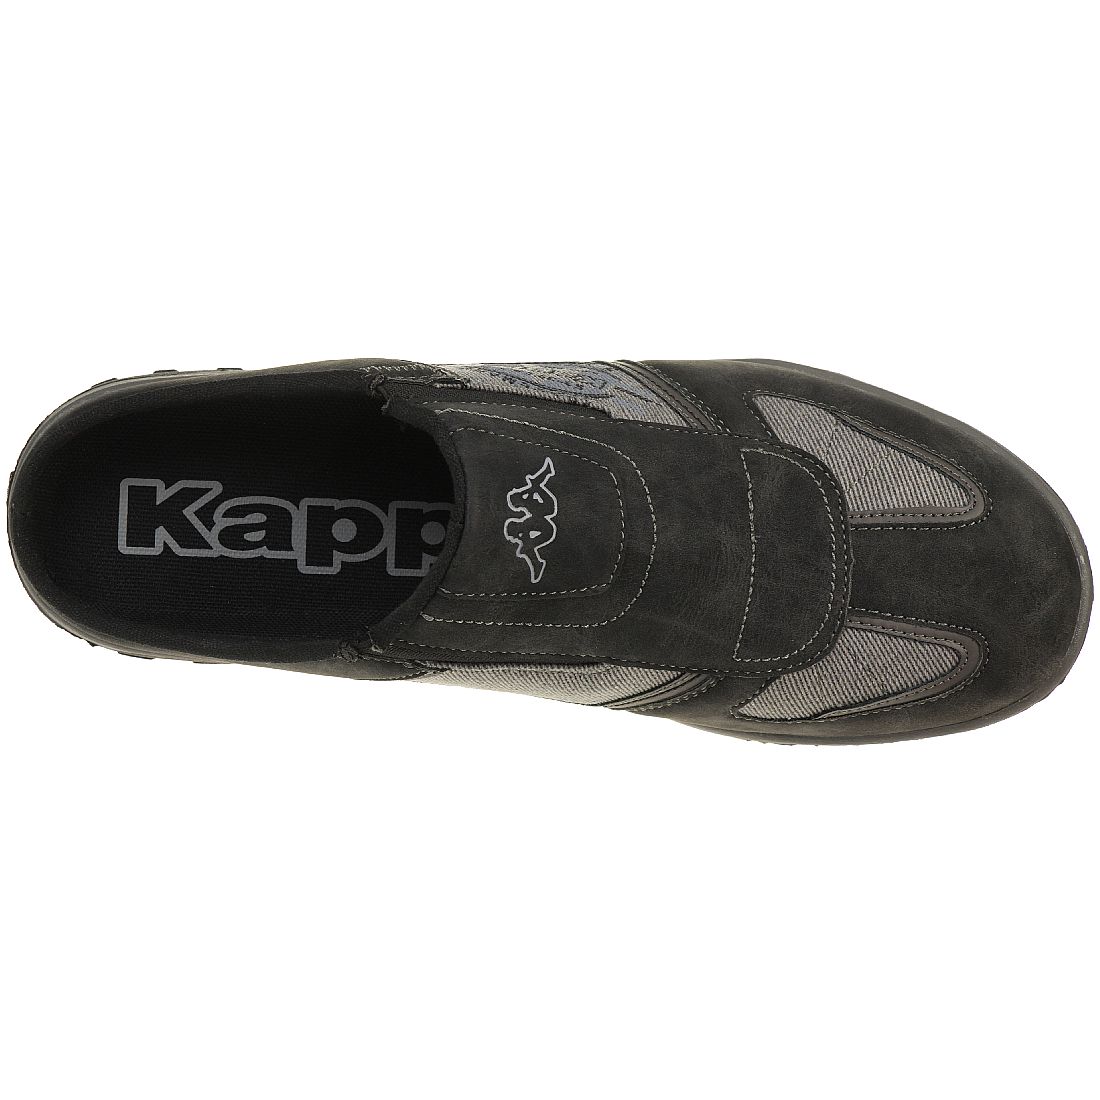 Kappa DEBONAIR Herren Casual Sneaker Sandale schwarz 242654